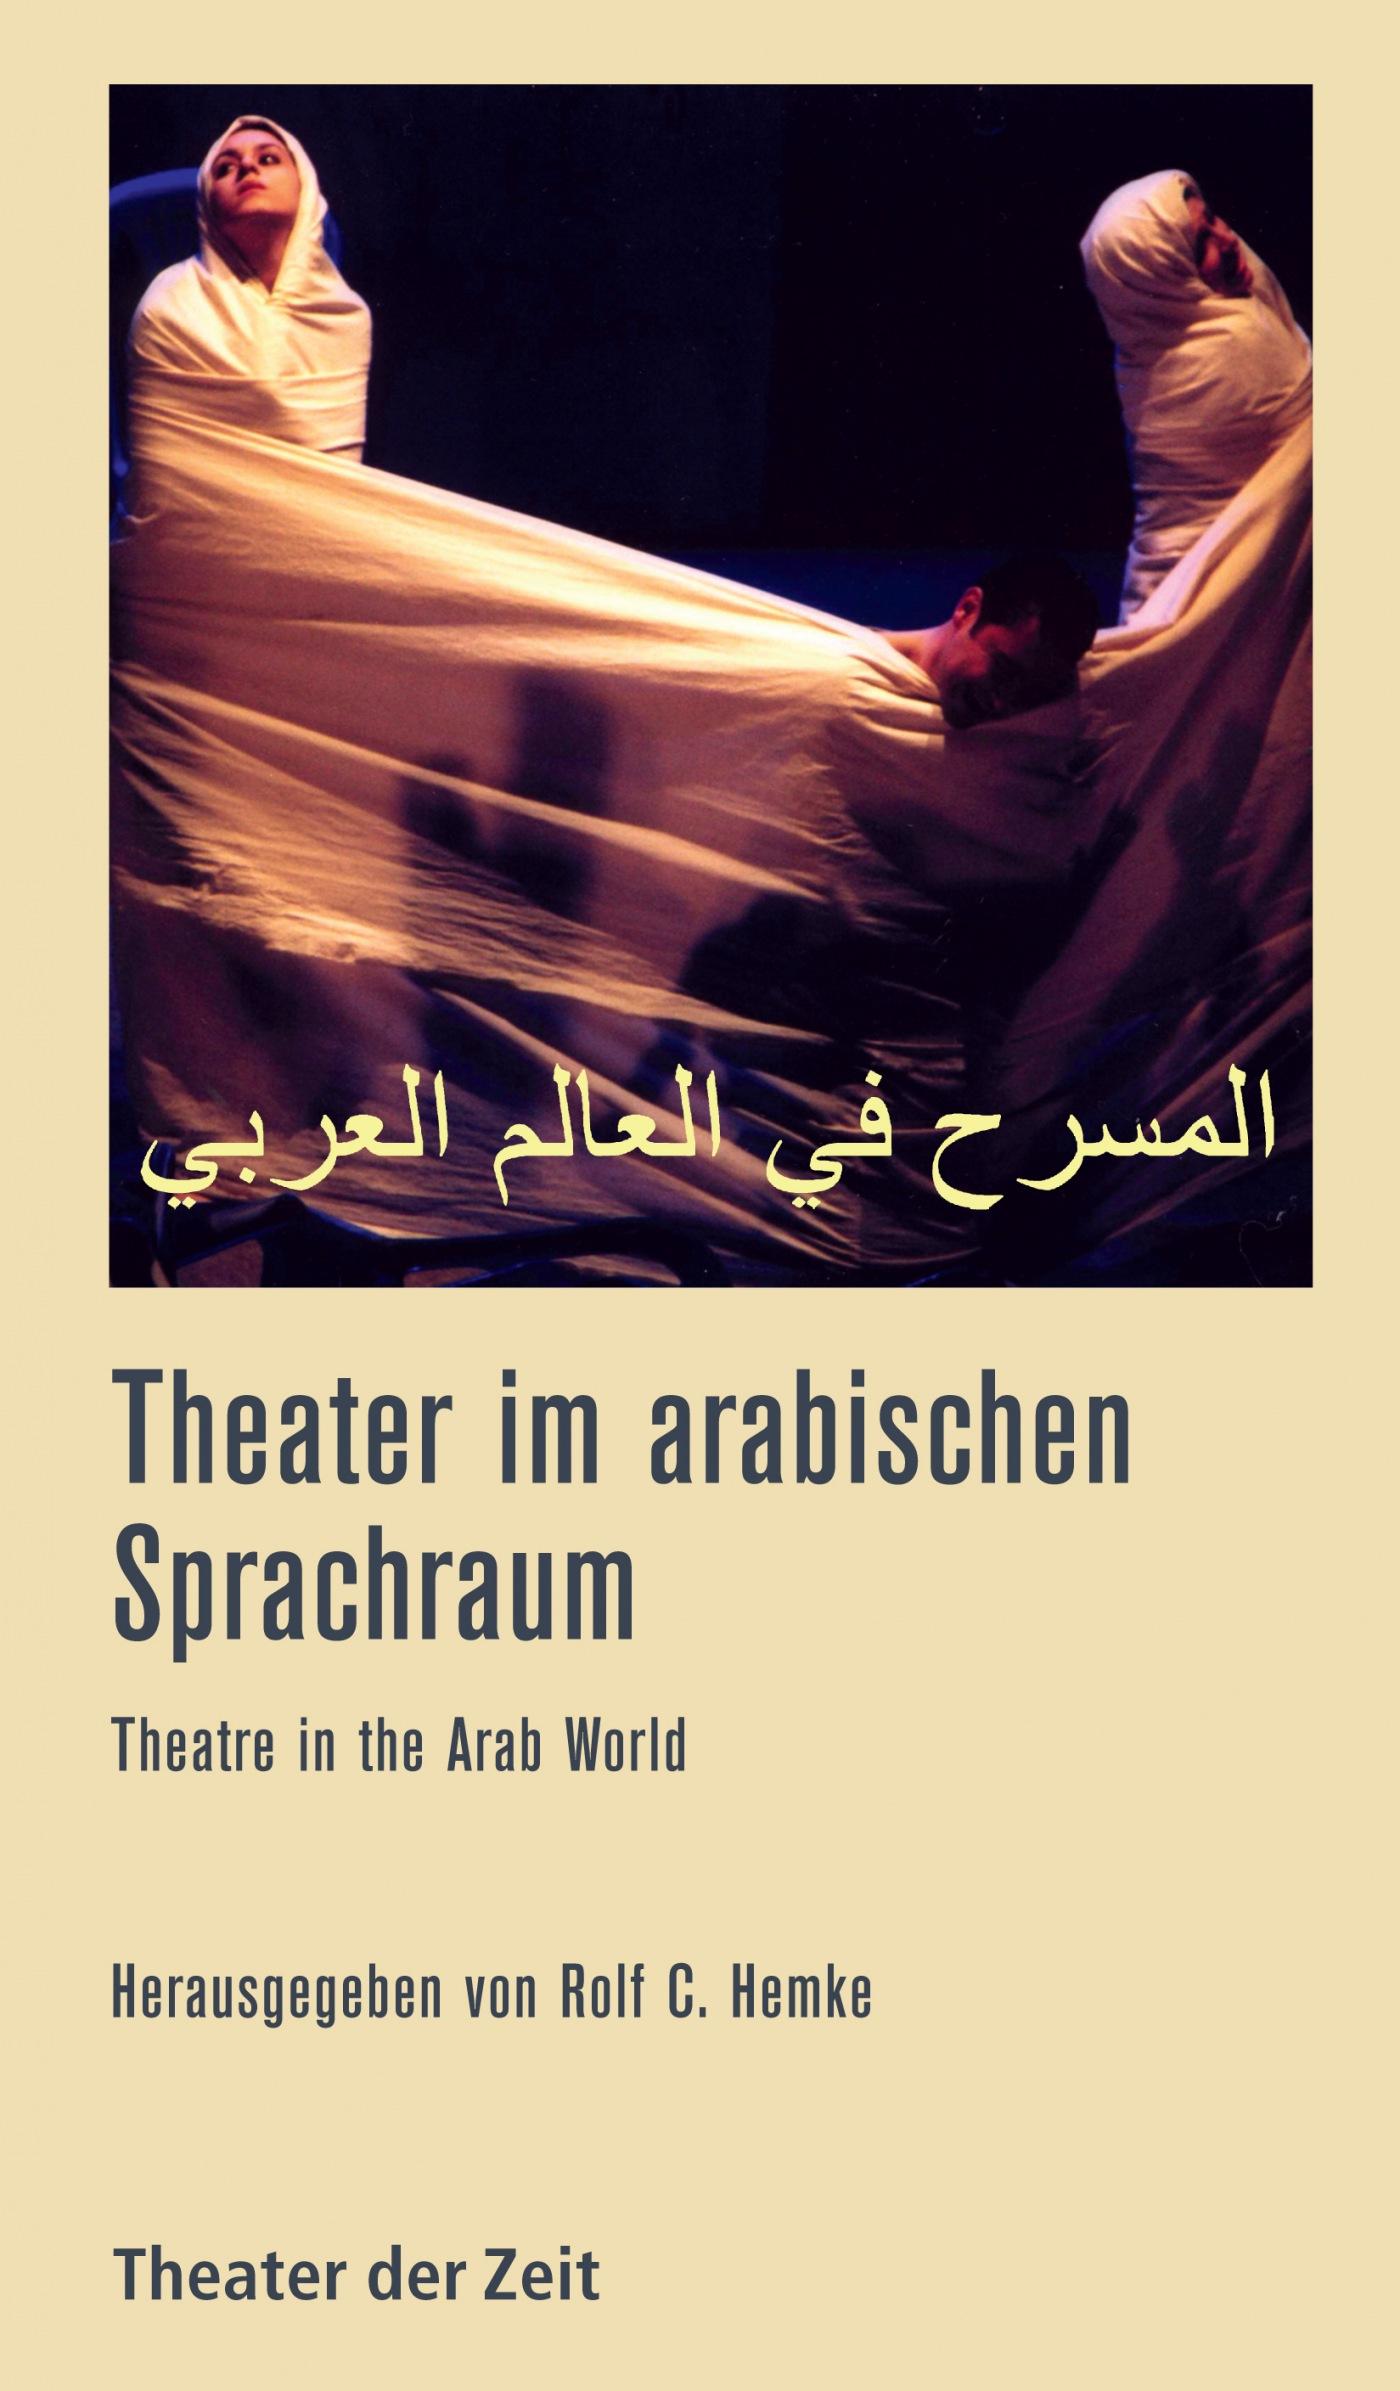 Recherchen 104 "Theater im arabischen Sprachraum"